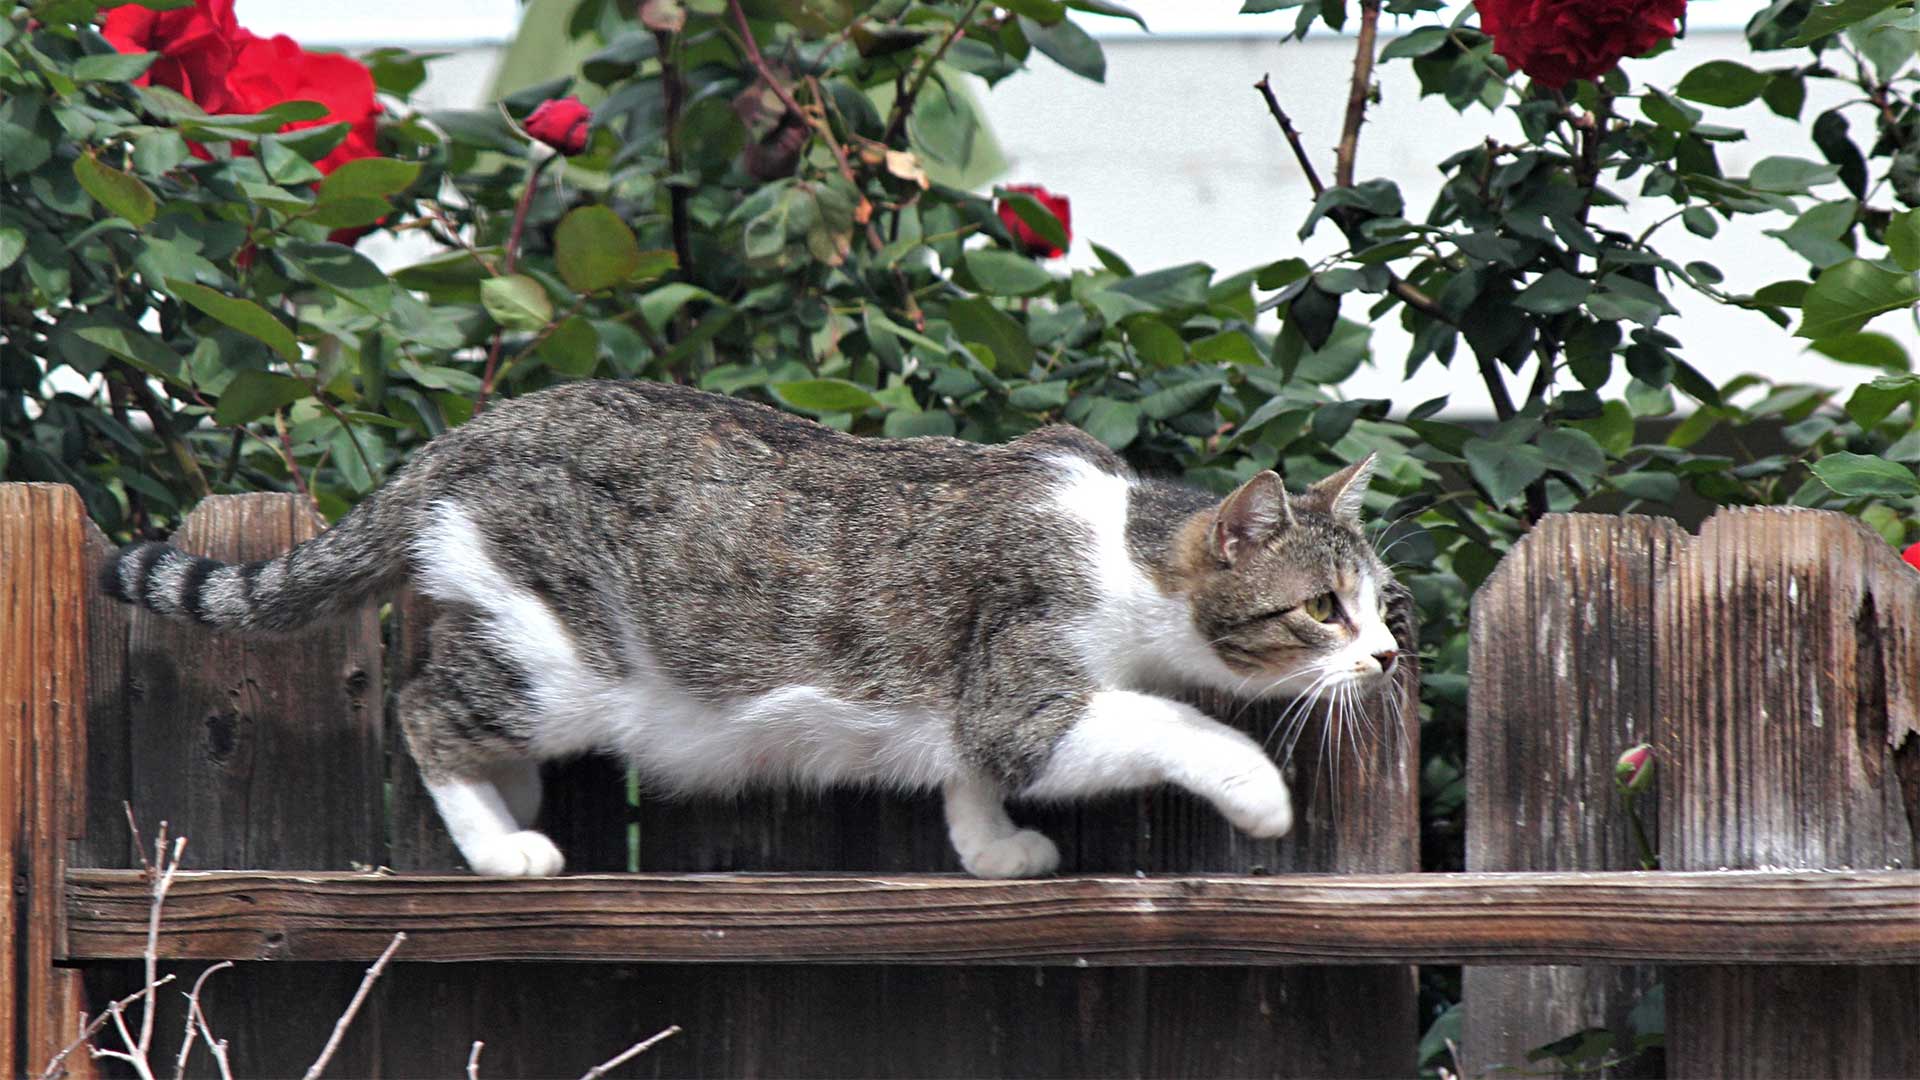 Cat burglar creeping on fence